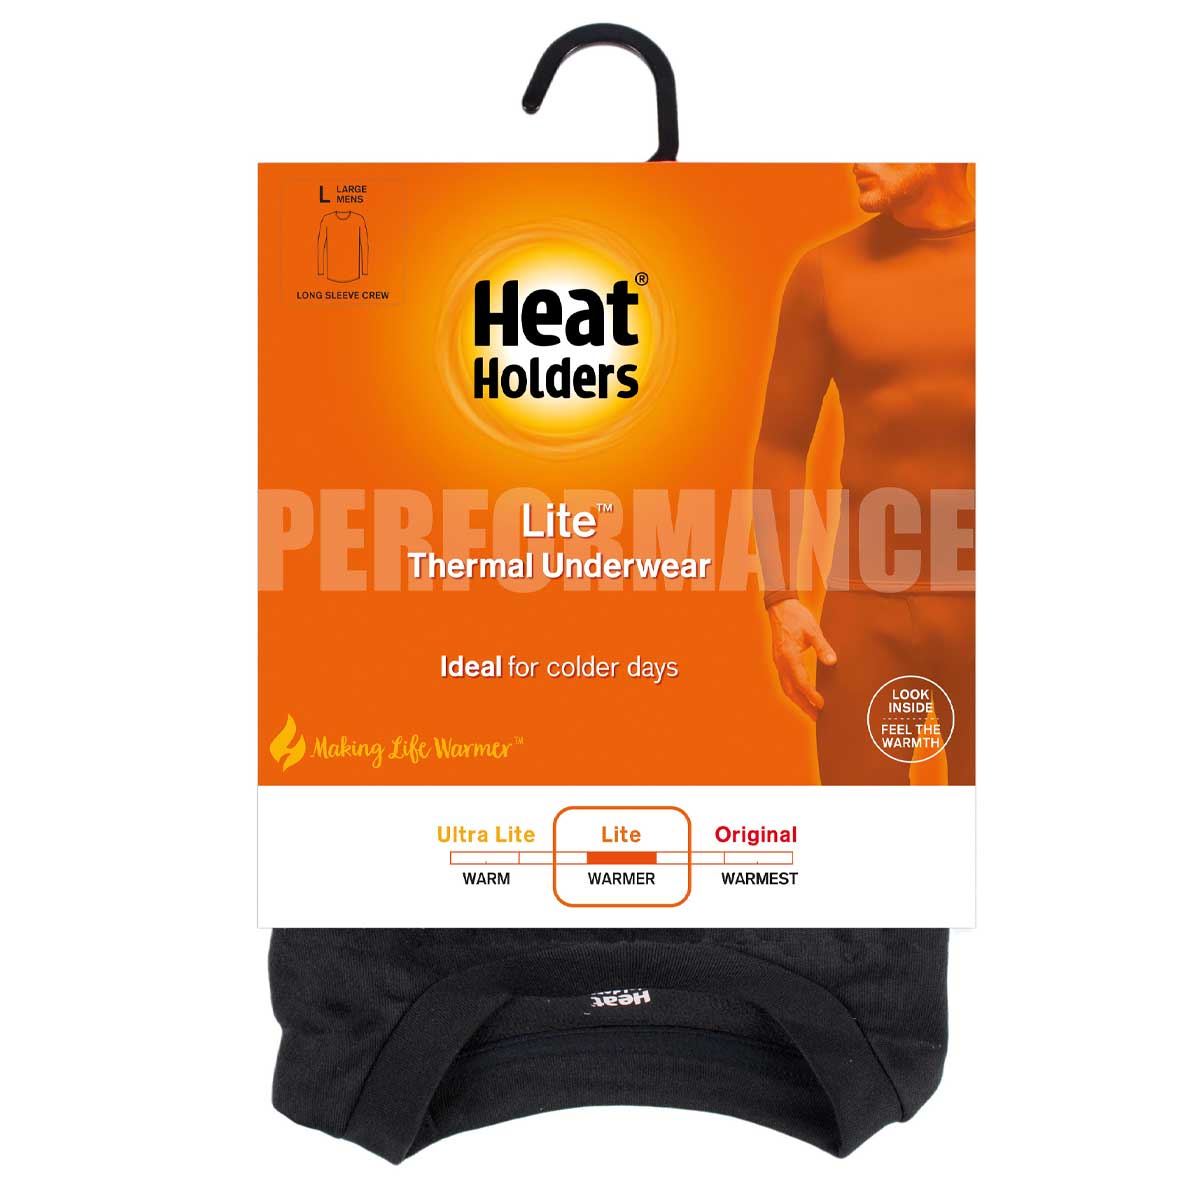 Heat Holders - Camiseta Primera Capa Térmica Frio Medio